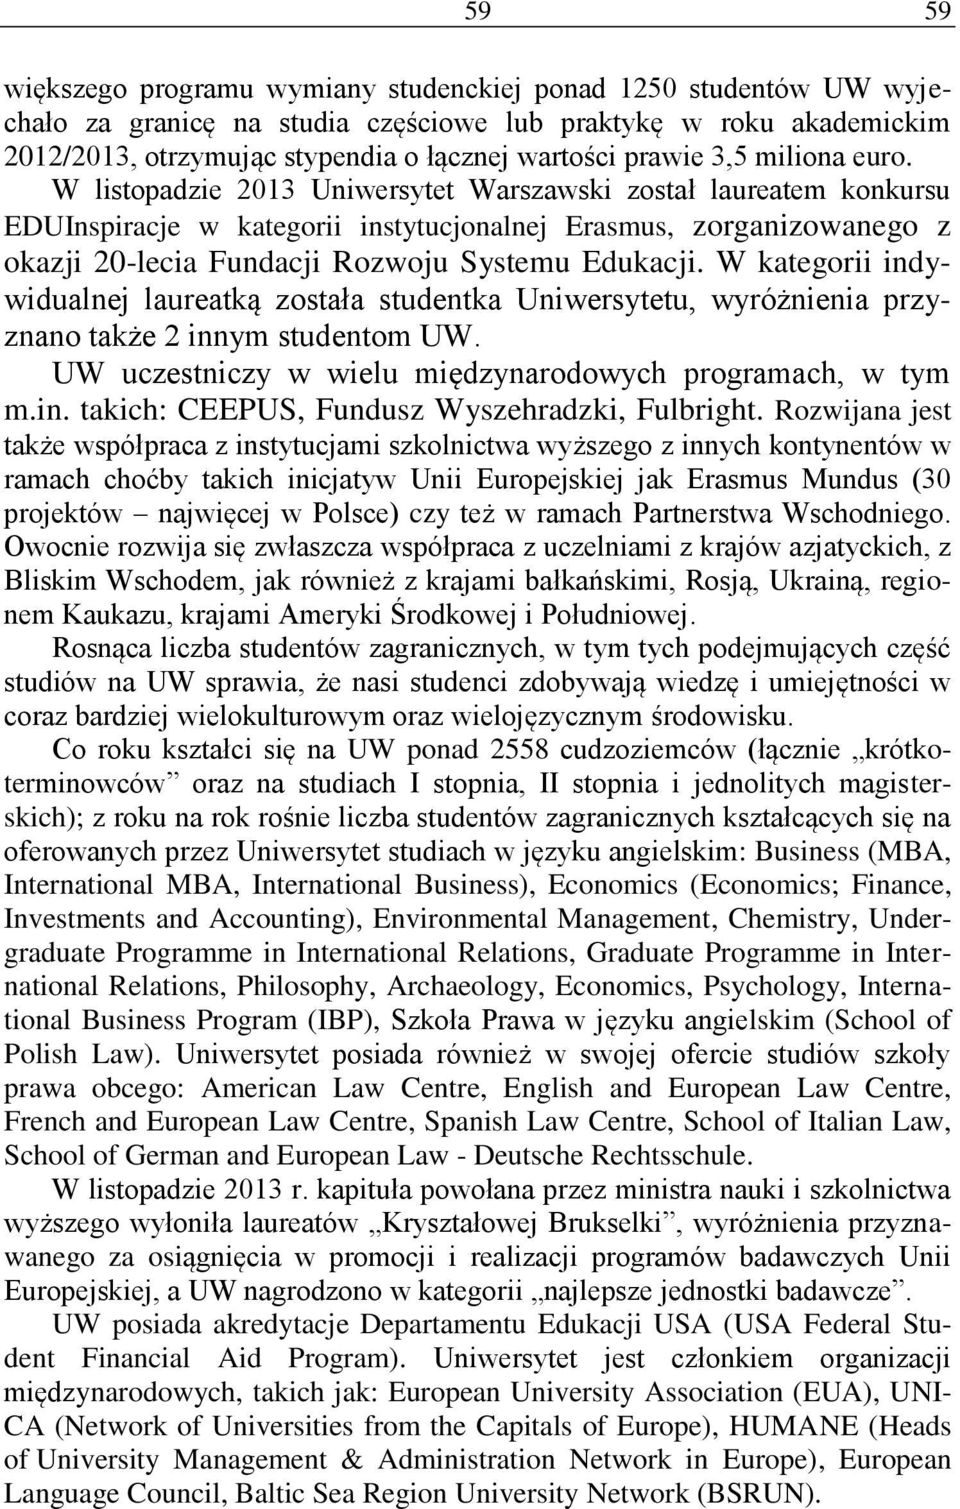 W listopadzie 2013 Uniwersytet Warszawski został laureatem konkursu EDUInspiracje w kategorii instytucjonalnej Erasmus, zorganizowanego z okazji 20-lecia Fundacji Rozwoju Systemu Edukacji.